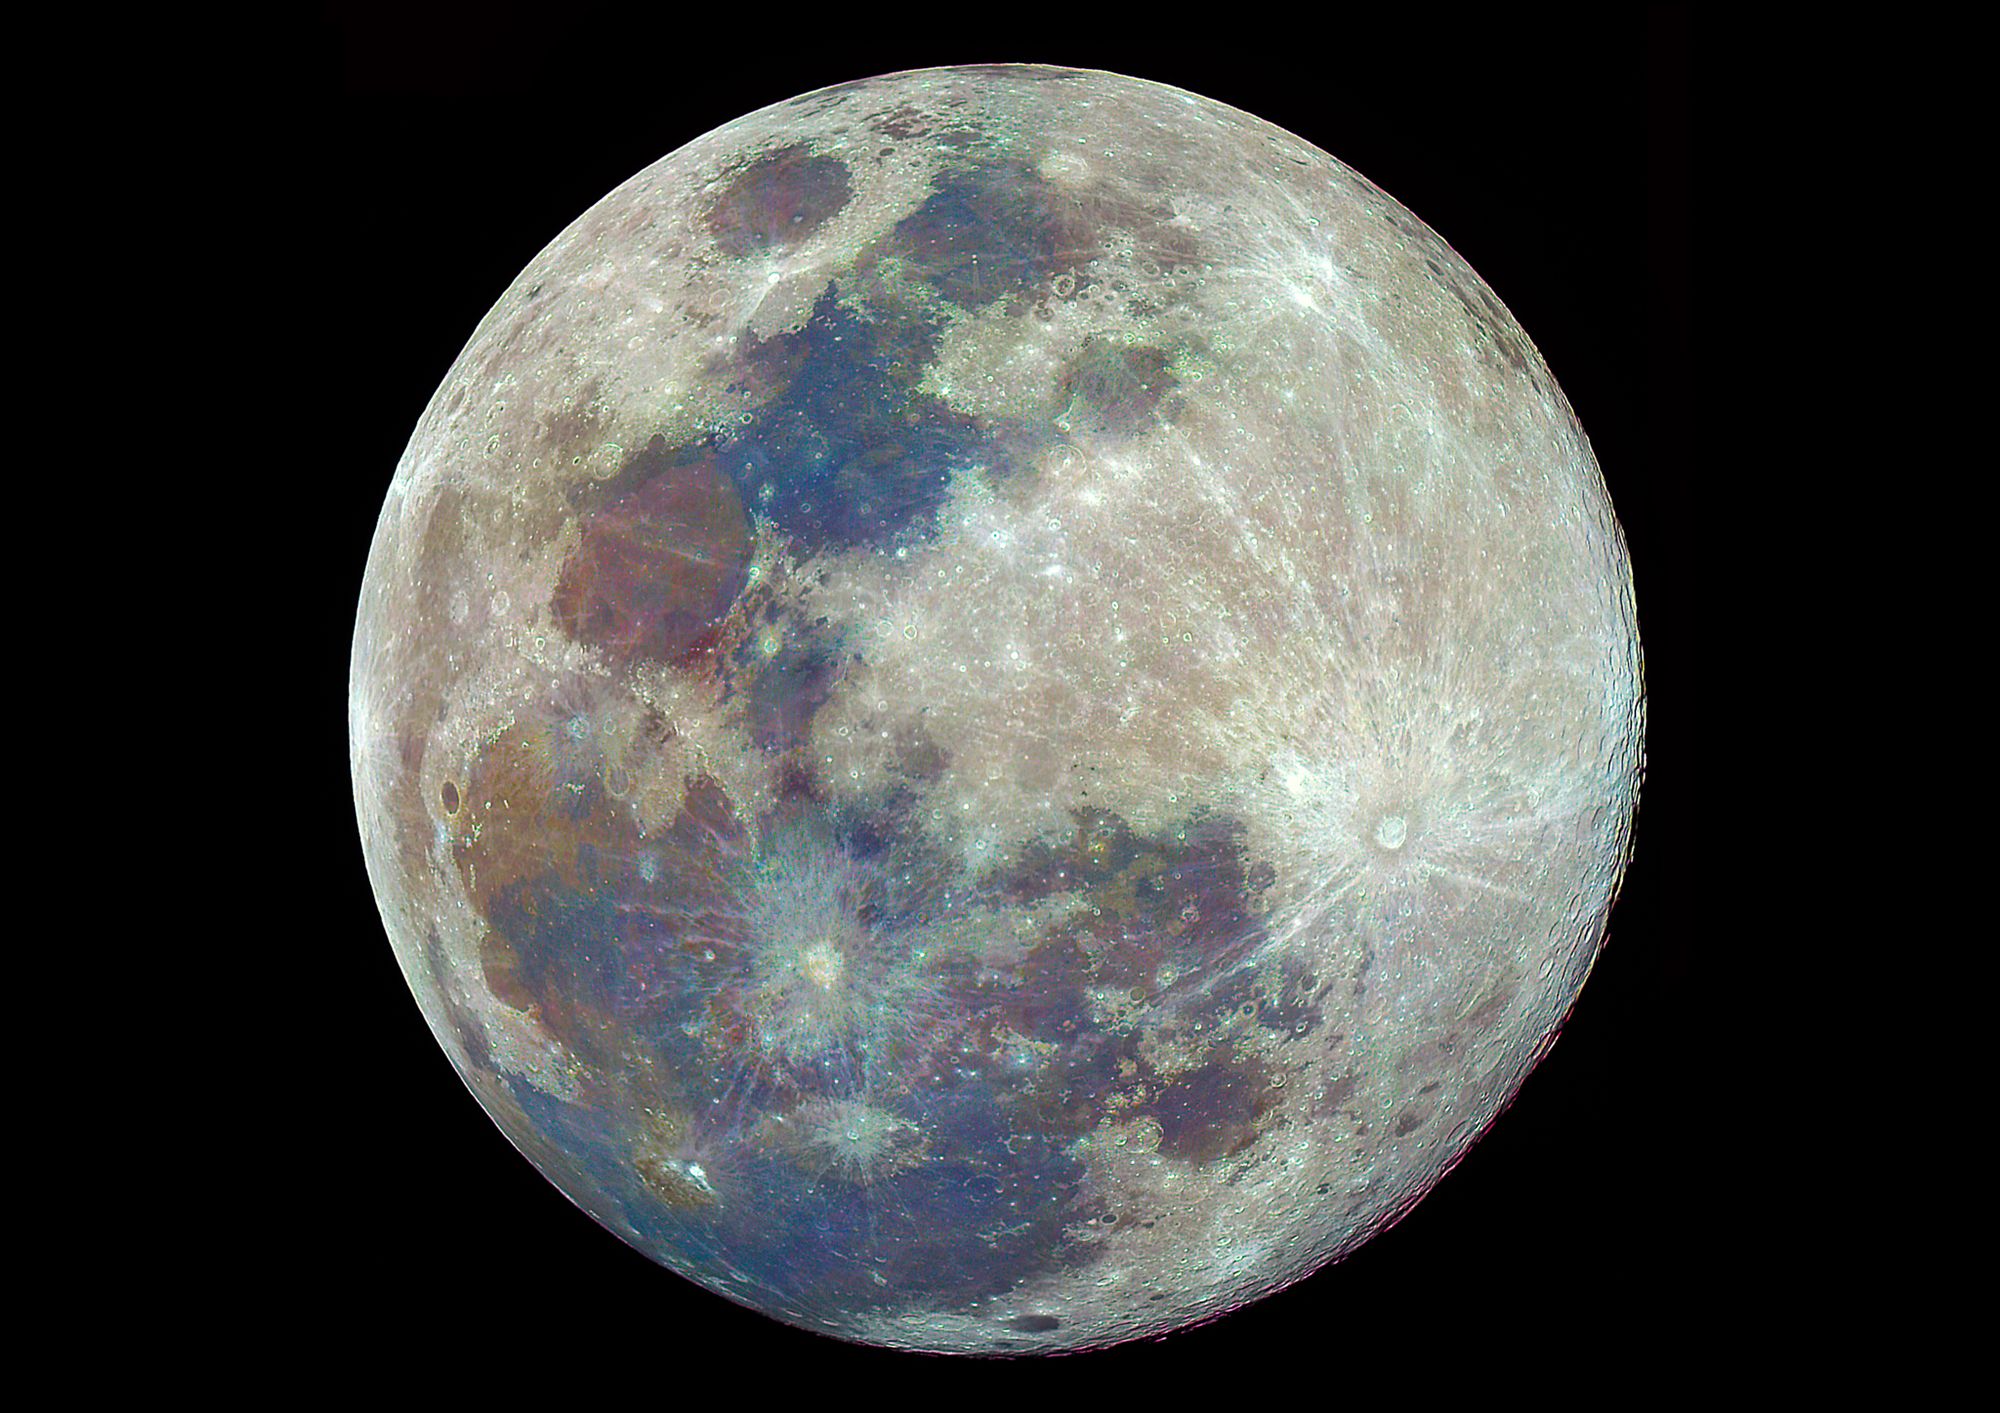 ความรู้จากภาพถ่าย “ดวงจันทร์” ในช่วงวันอยู่บ้านหยุดเชื้อเพื่อชาติ